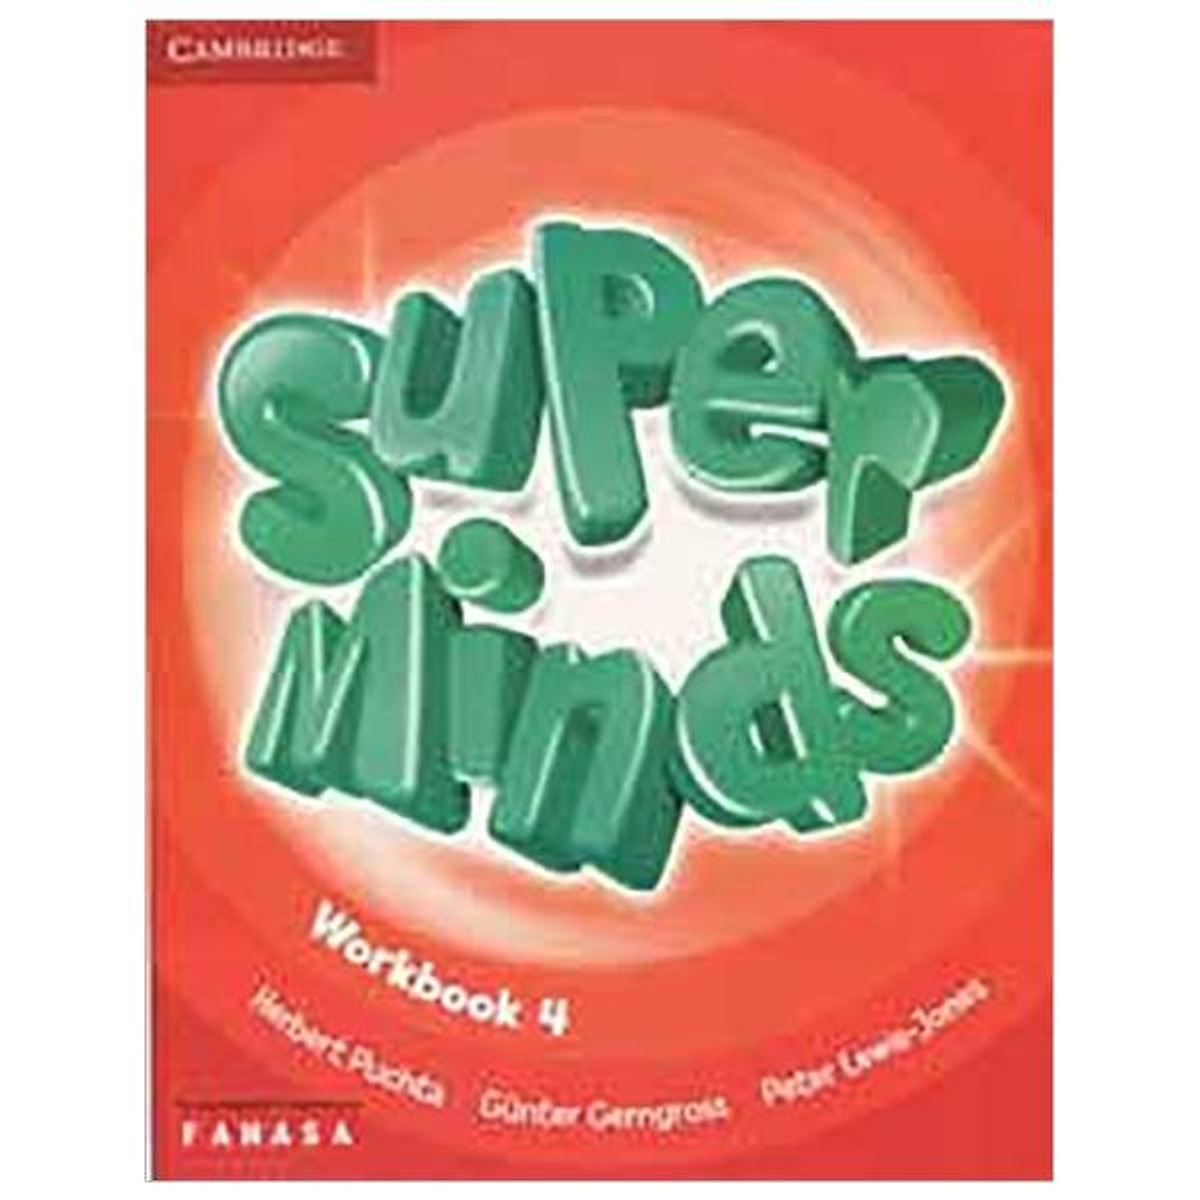 Super Minds 4 - Wordbook